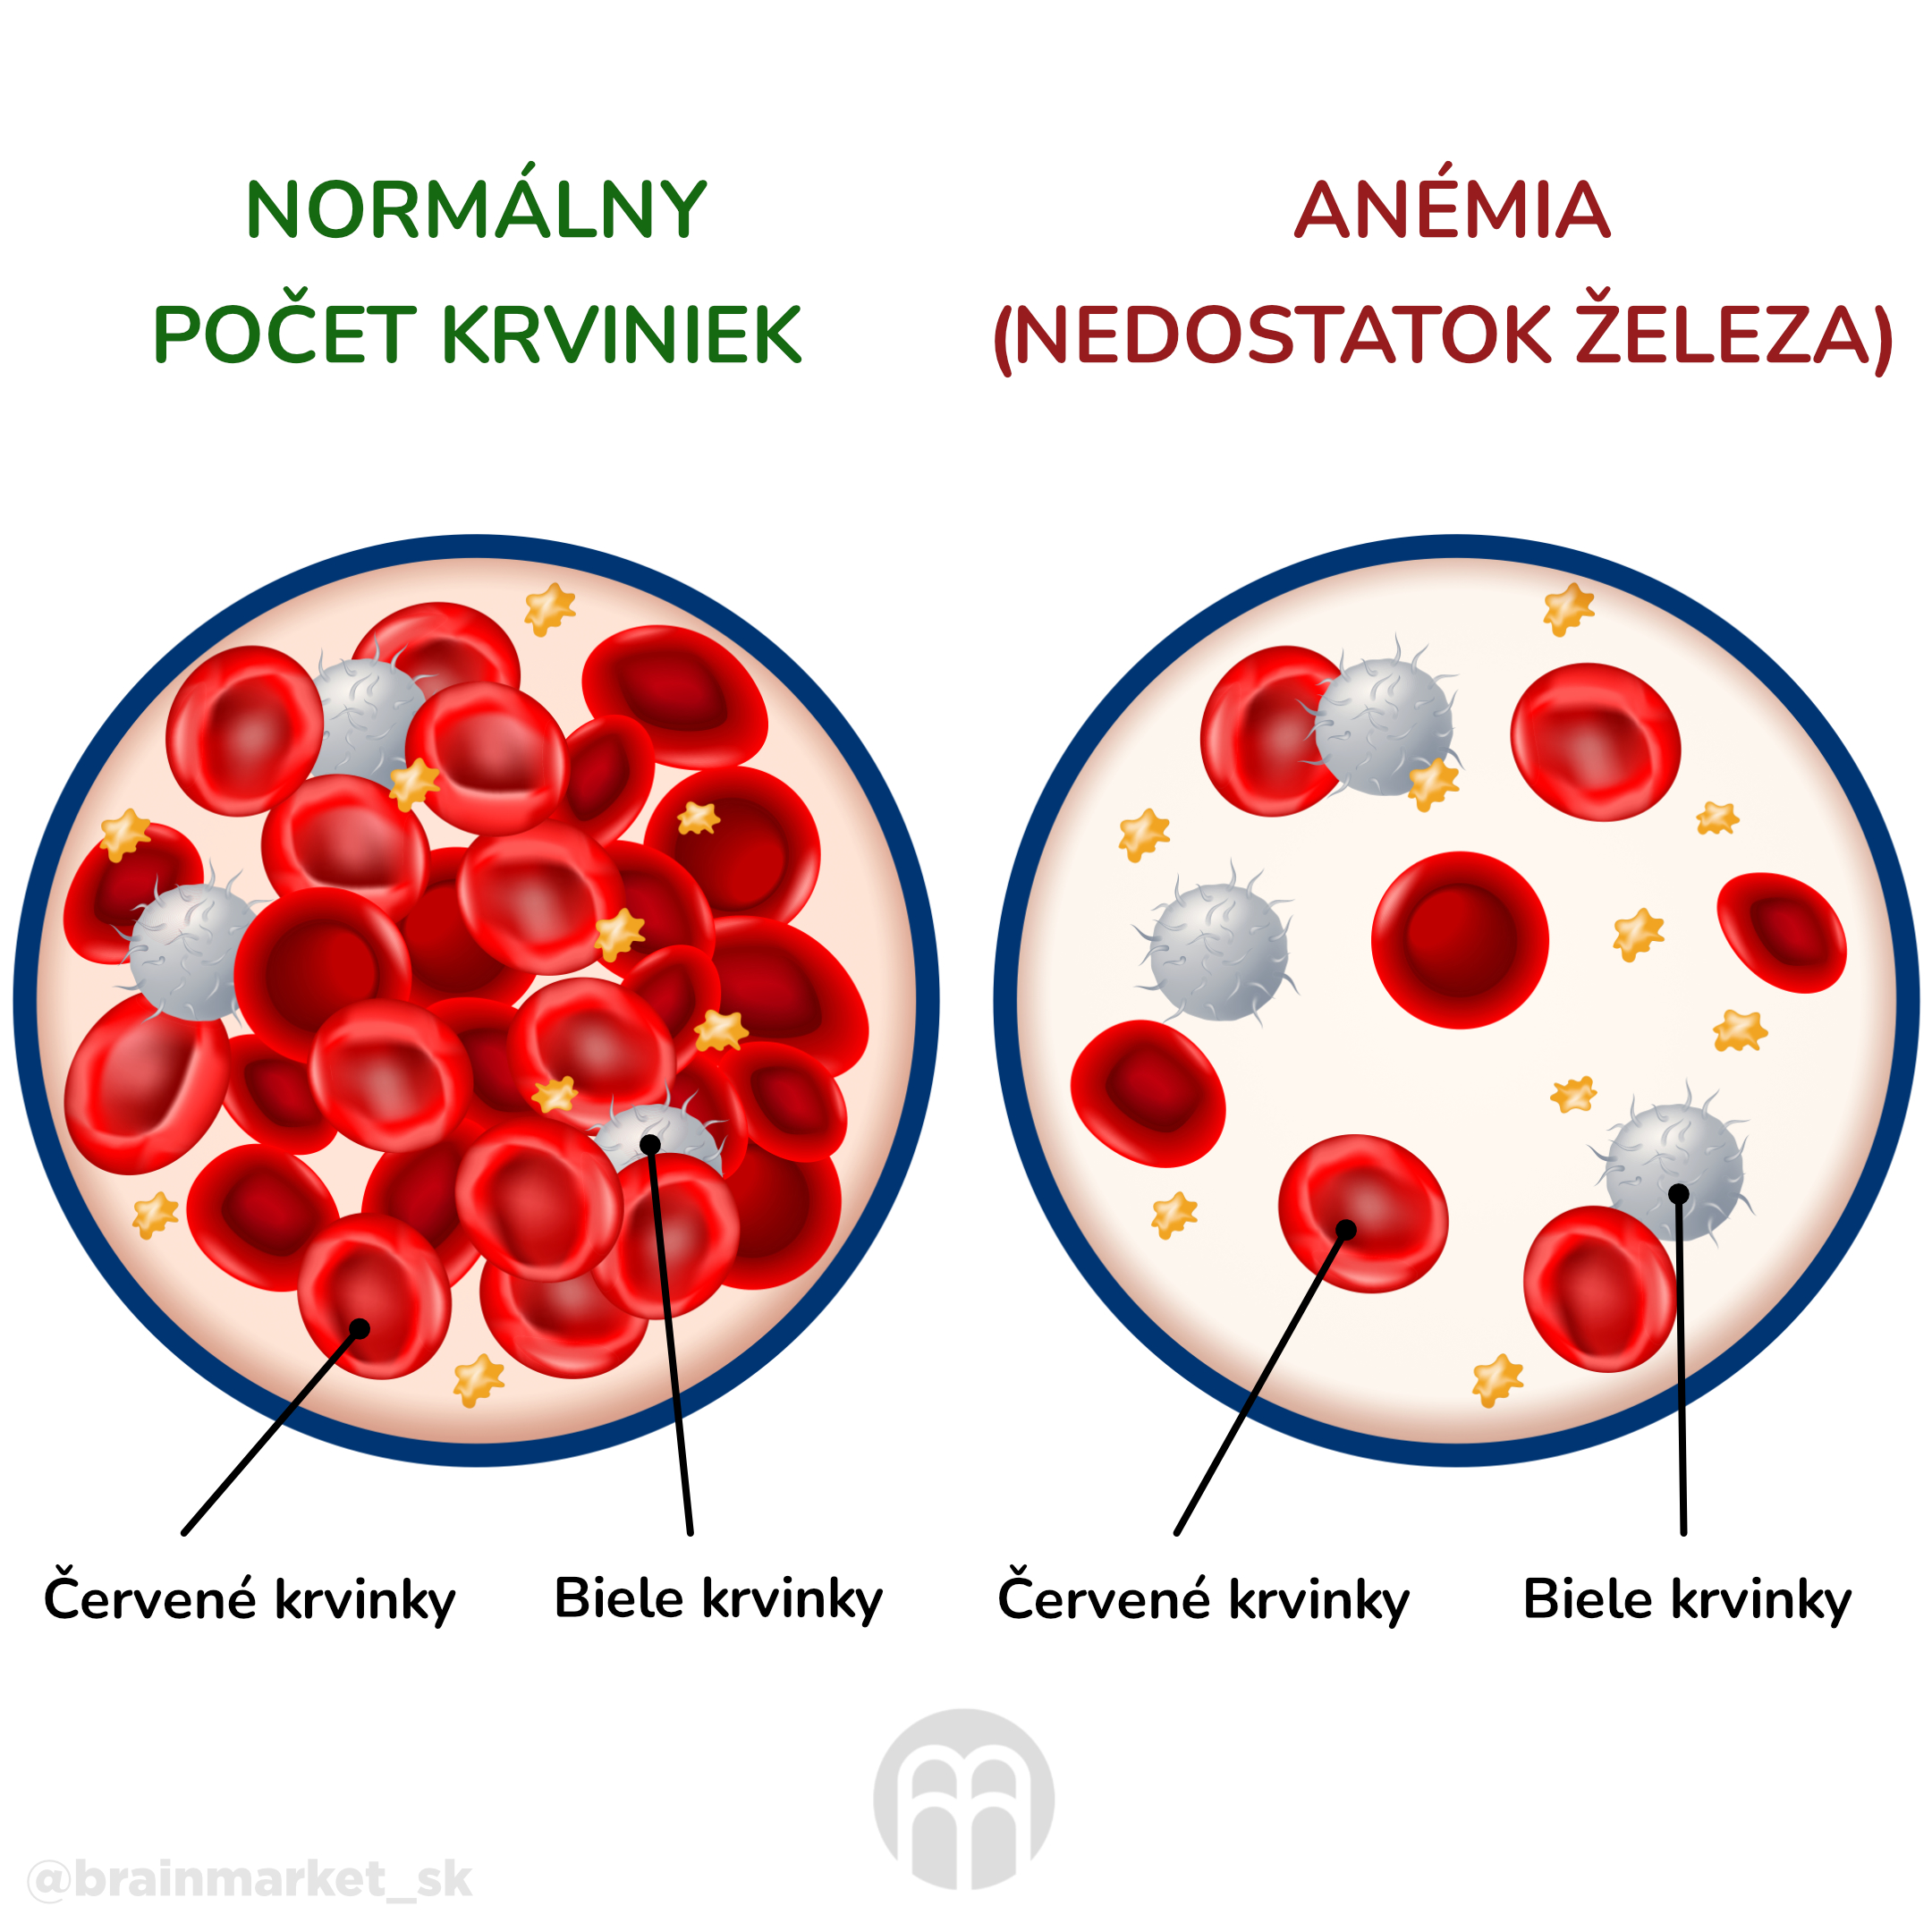 anemie_infografika_cz